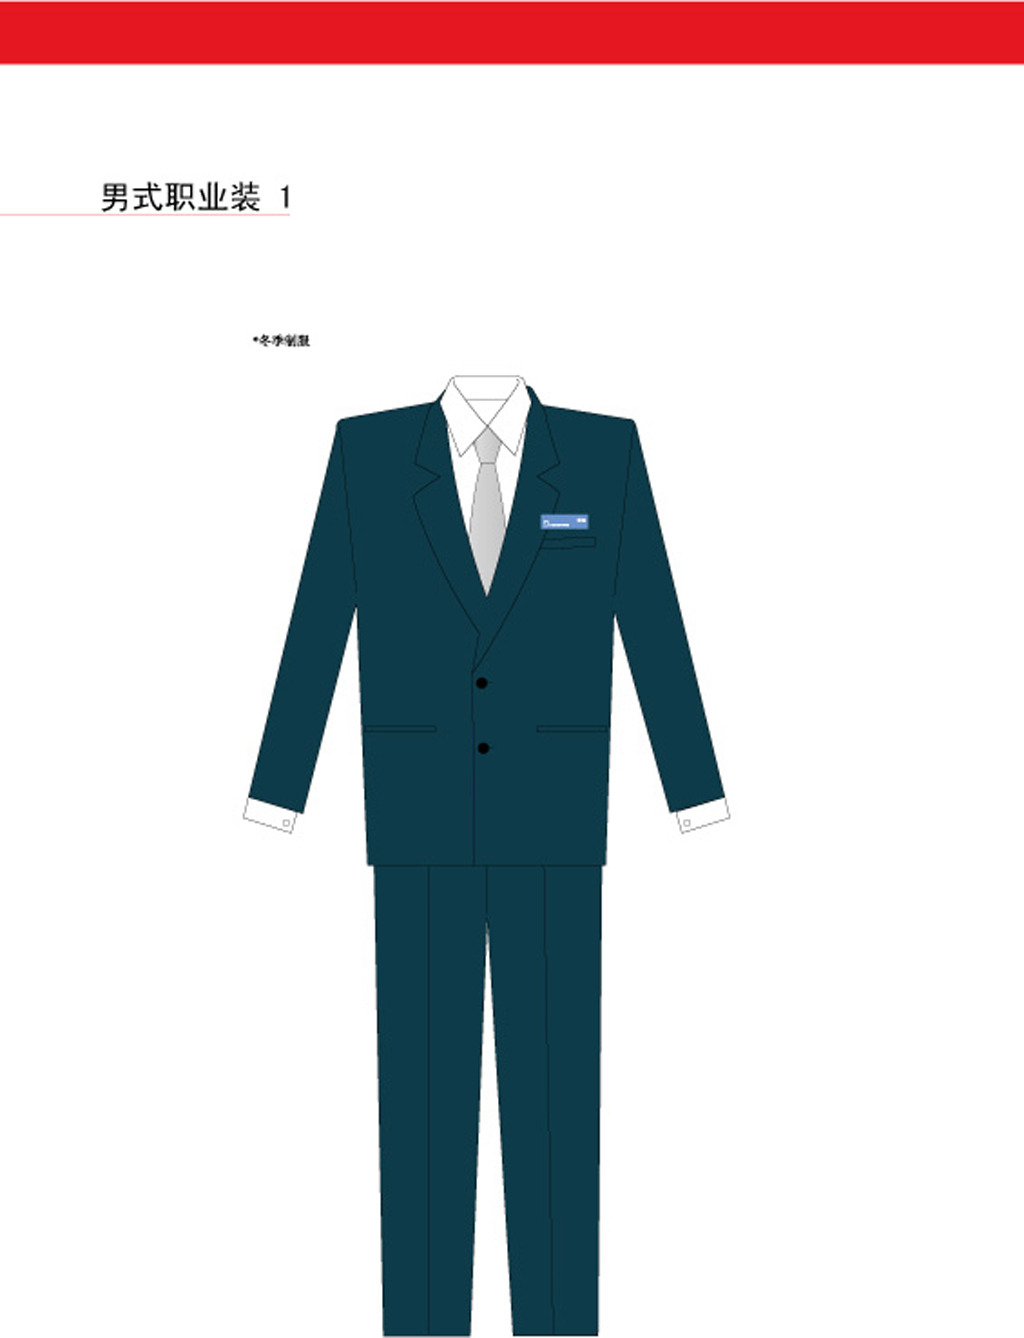 男性职场服装设计模板下载(图片编号:1203851